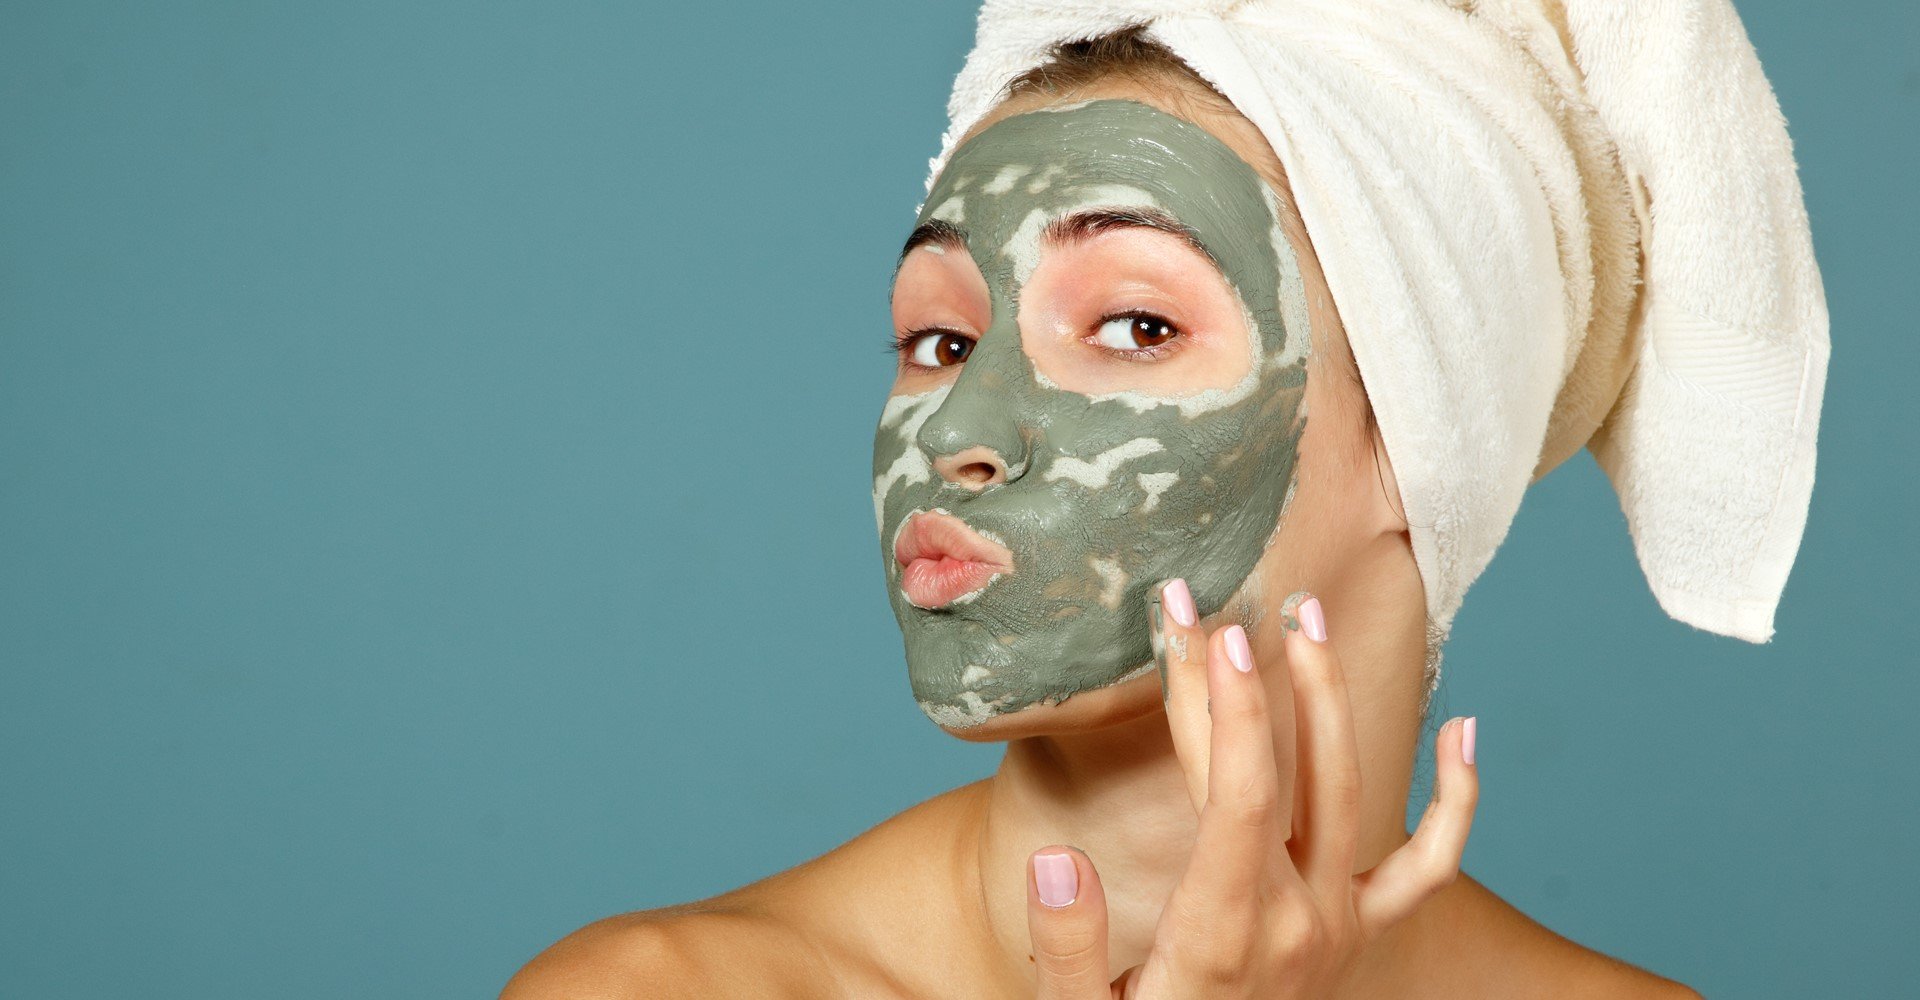 Máscara facial ajuda a hidratar o rosto? Saiba como apostar no tratamento em casa!| L'Oréal Paris